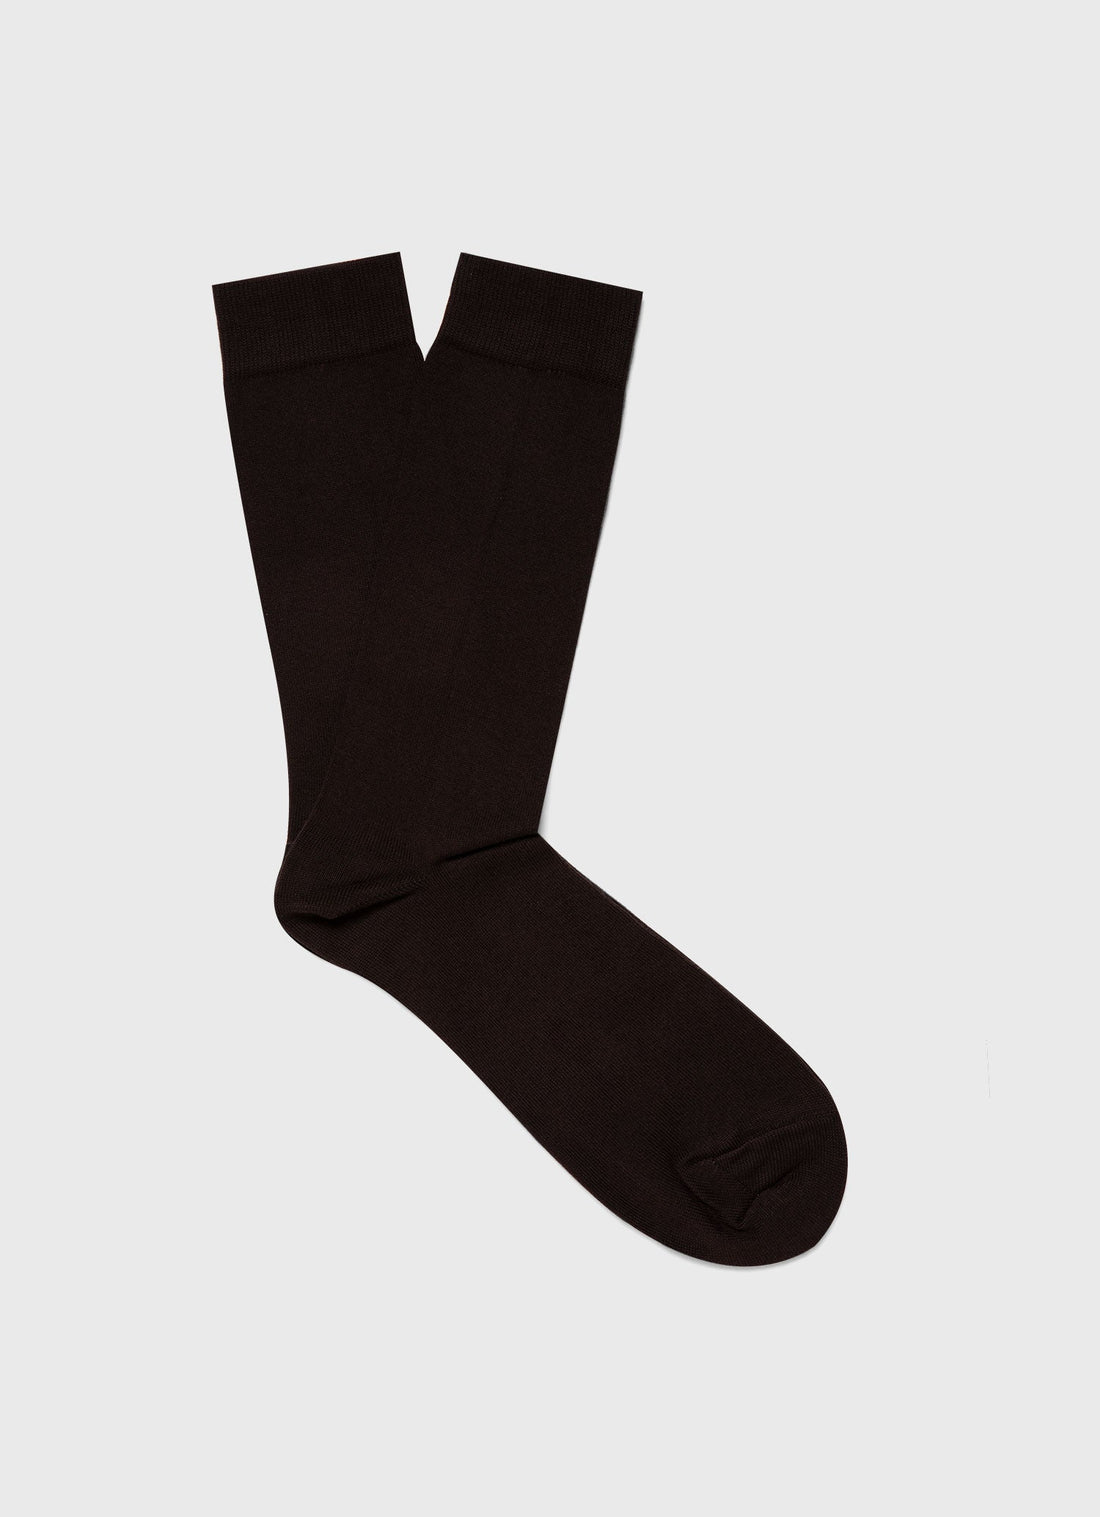 Men's Cotton Socks in Coffee